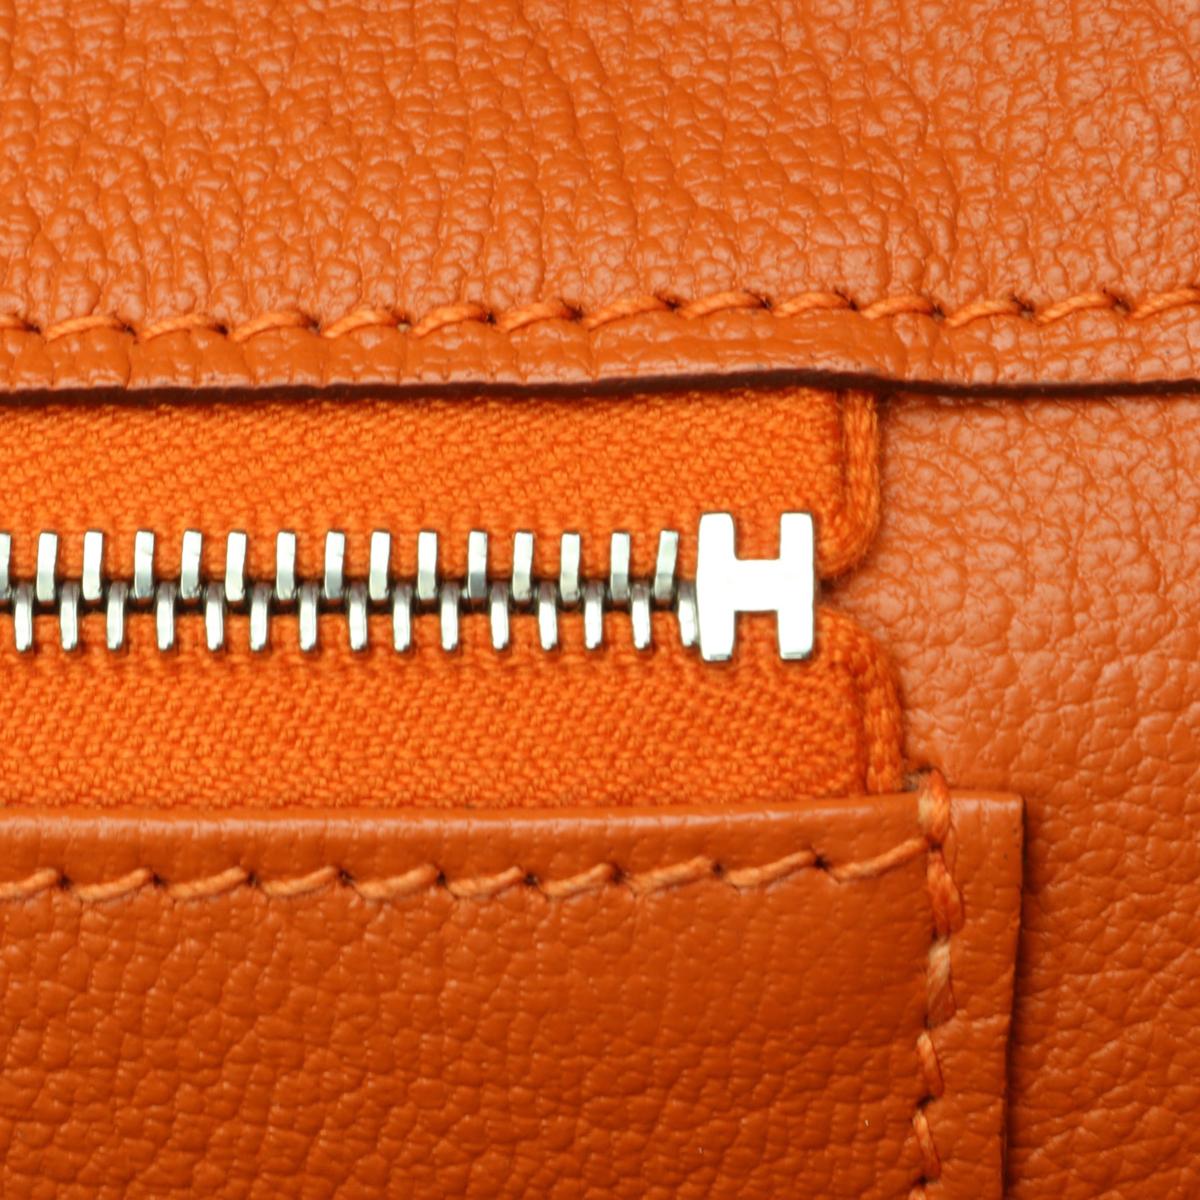 Hermès Birkin Bag 35cm Orange Togo Leather with Palladium Hardware Stamp N 2010 11